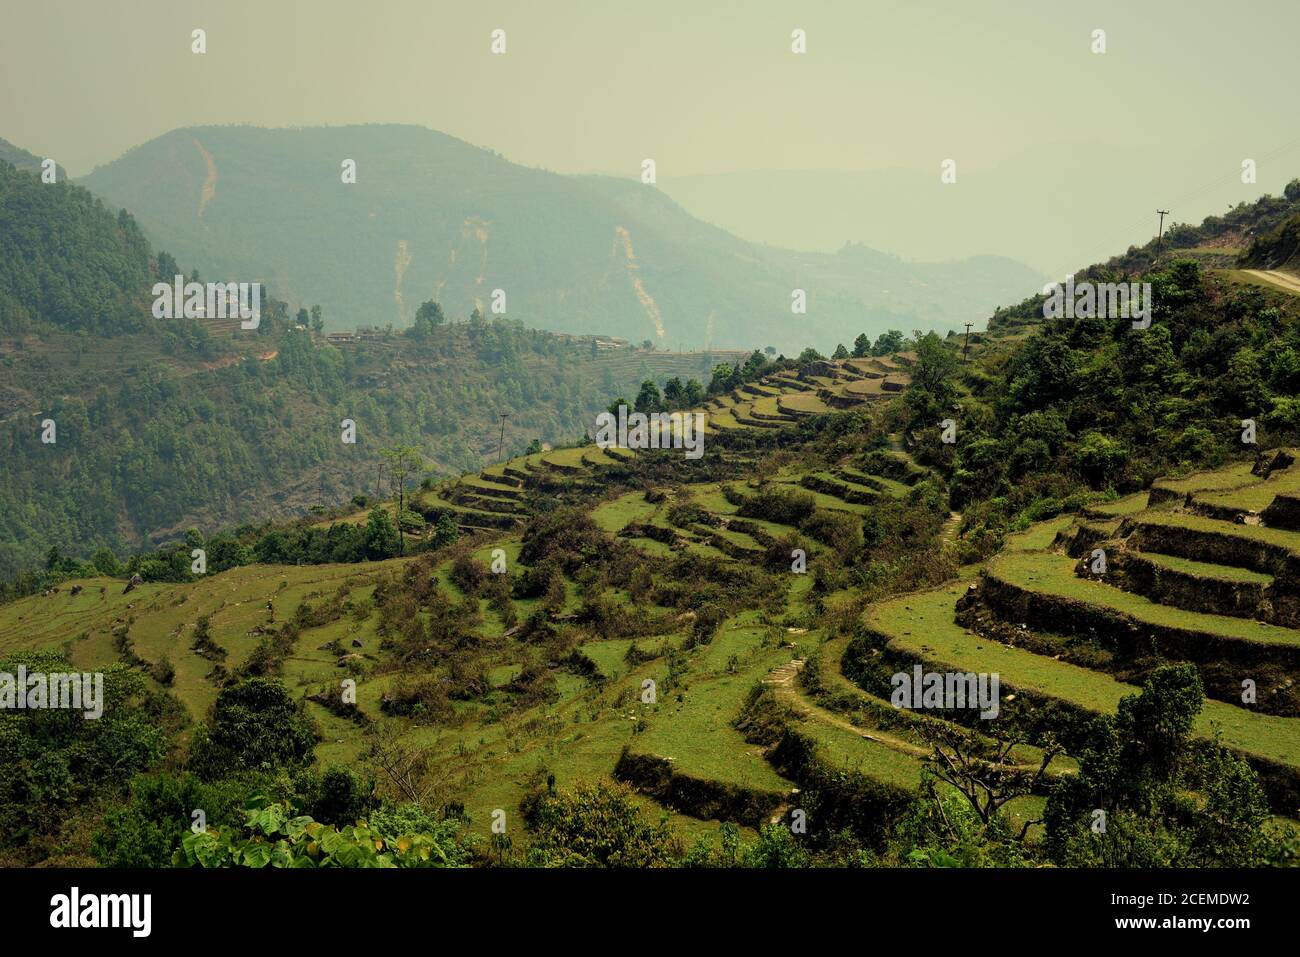 Landwirtschaftliche Terrassen und Blick auf die Berge aus Sidhane Dorf in Kaski Bezirk, Gandaki Pradesh Provinz, Nepal. Stockfoto